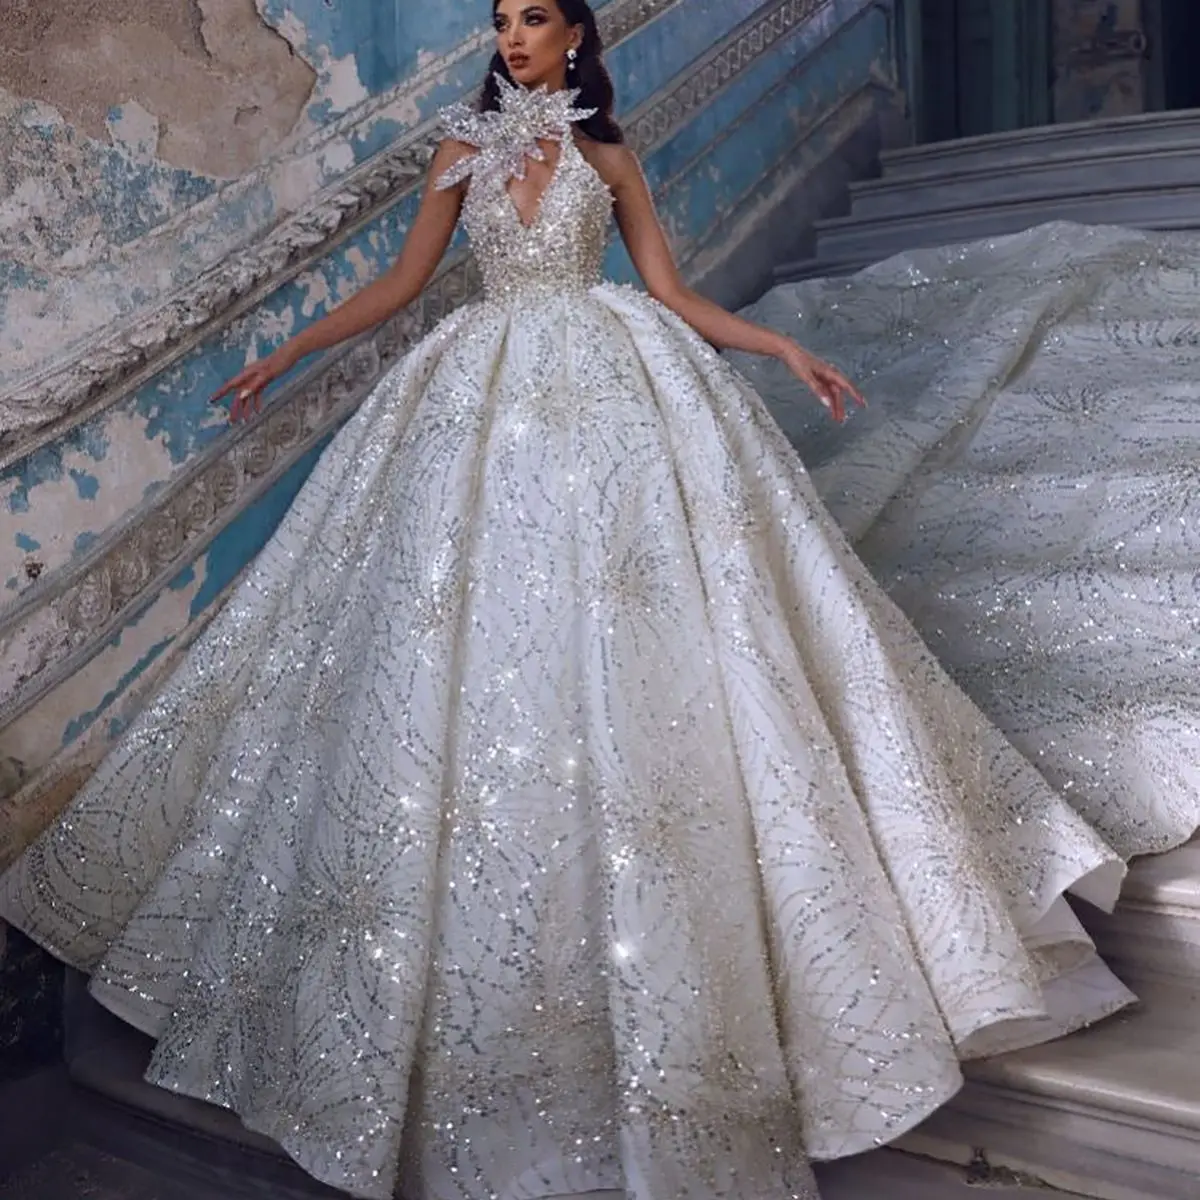 Gaun pesta desainer gaun pernikahan kristal Gereja applique bunga 3D manik-manik buatan tangan elegan dibuat sesuai pesanan renda kembali Vestina